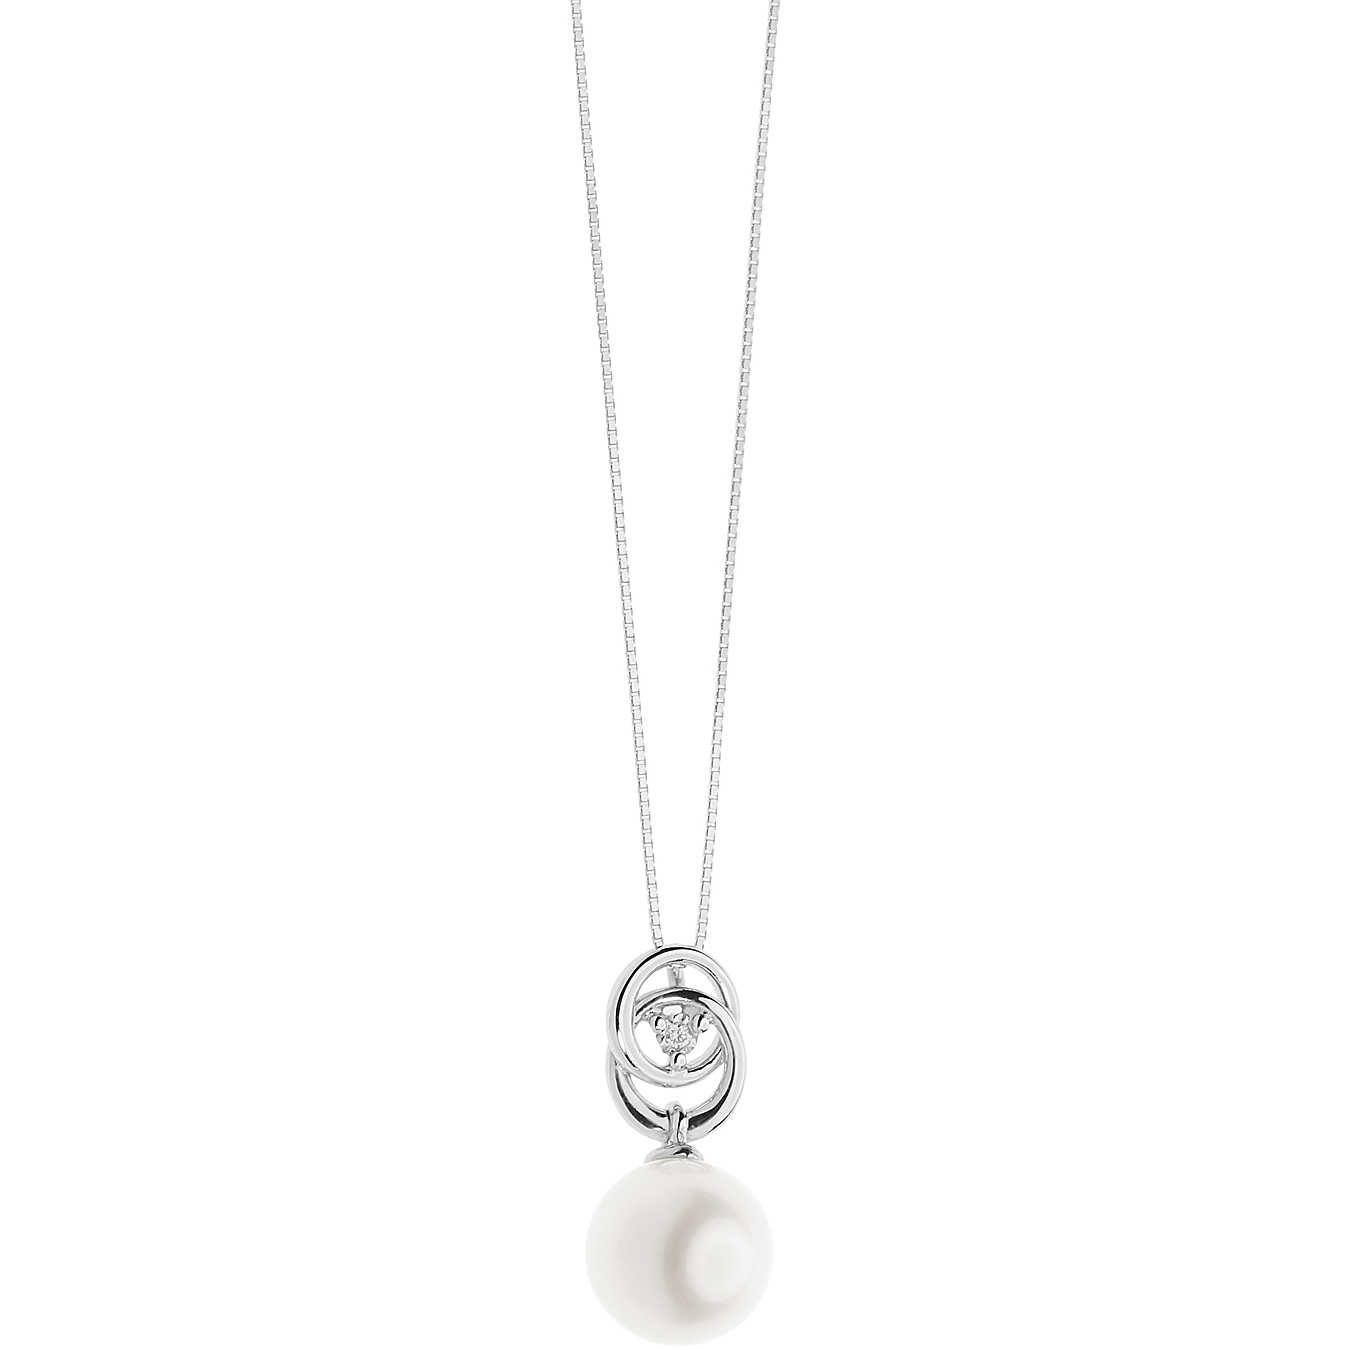 Women's Charm Comete Gioielli Love Pearls LPG 579